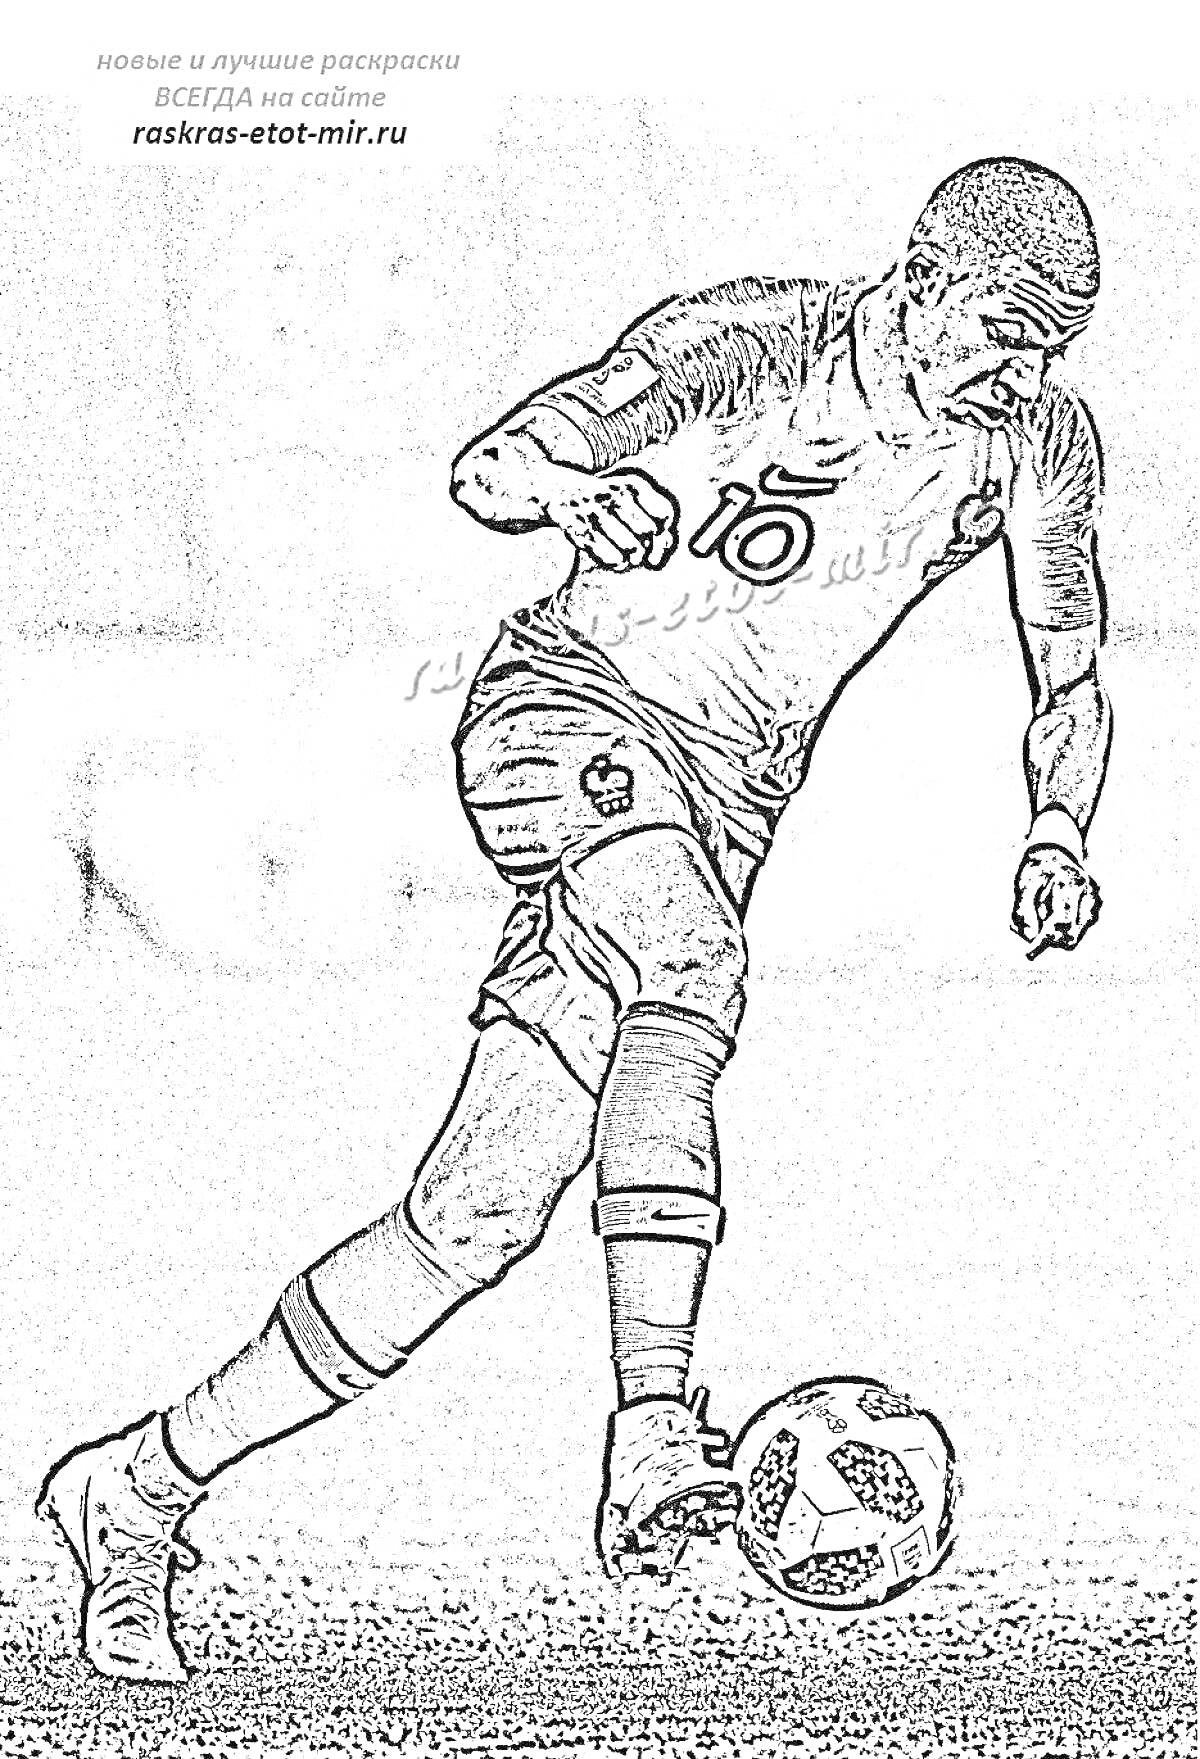 Раскраска Футболист бежит с мячом, игрок в футболке с номером, концентрация внимания на мяче, попытка произвести удар.